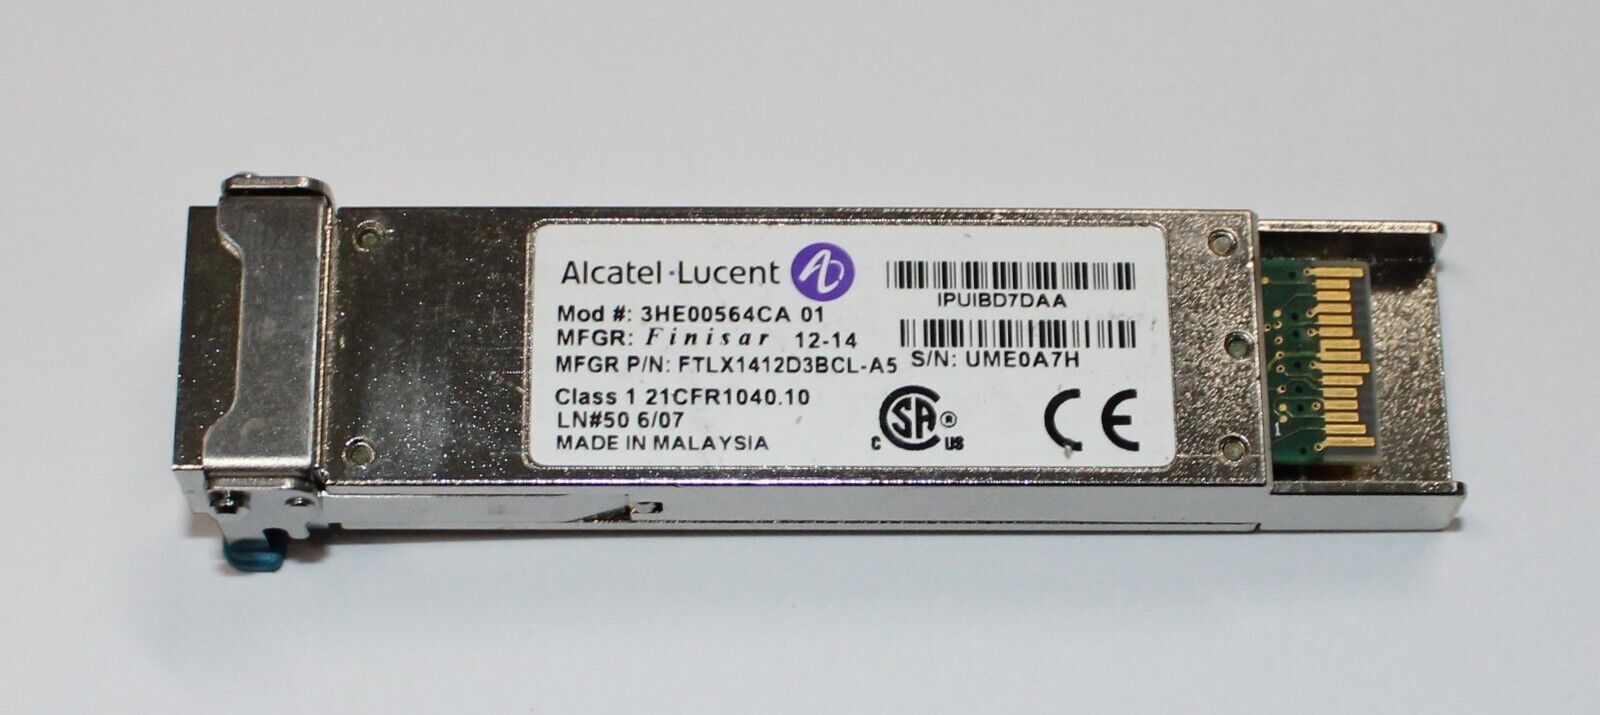 Alcatel/Finisar | 3HE00564CA 01 | FTLX1412D3BCL-A5 | 10GB Transceiver Module